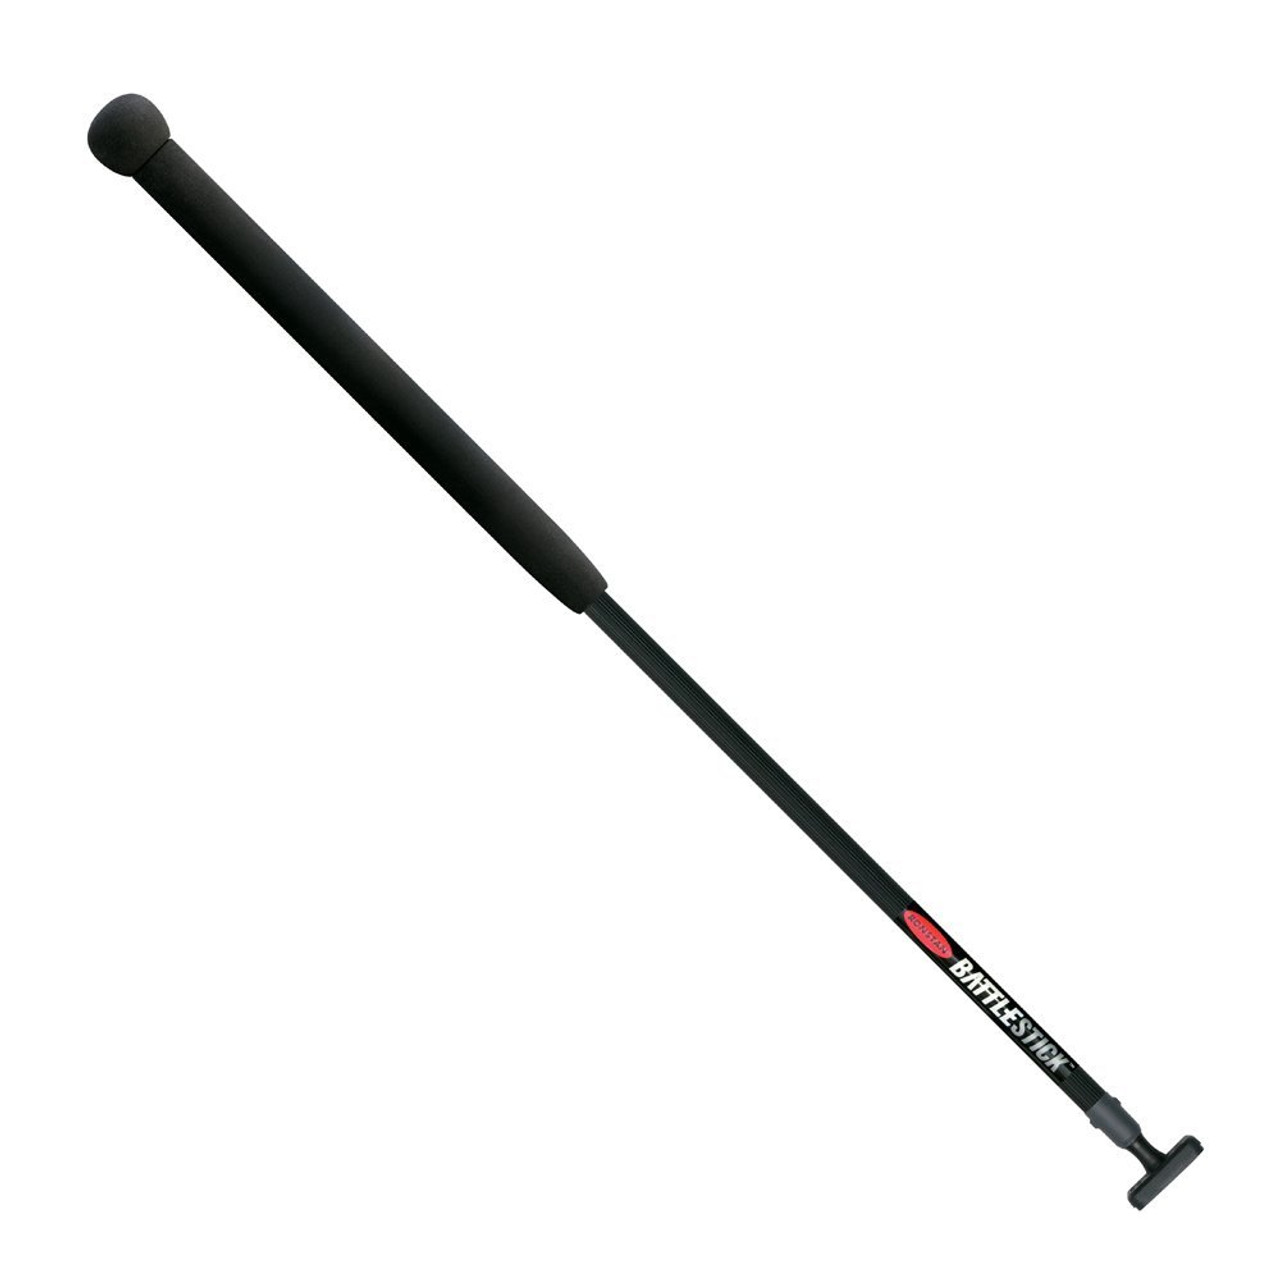 Ronstan Battlestick Lightweight Alloy - 840mm (33") Long [RF3129]-1581072274